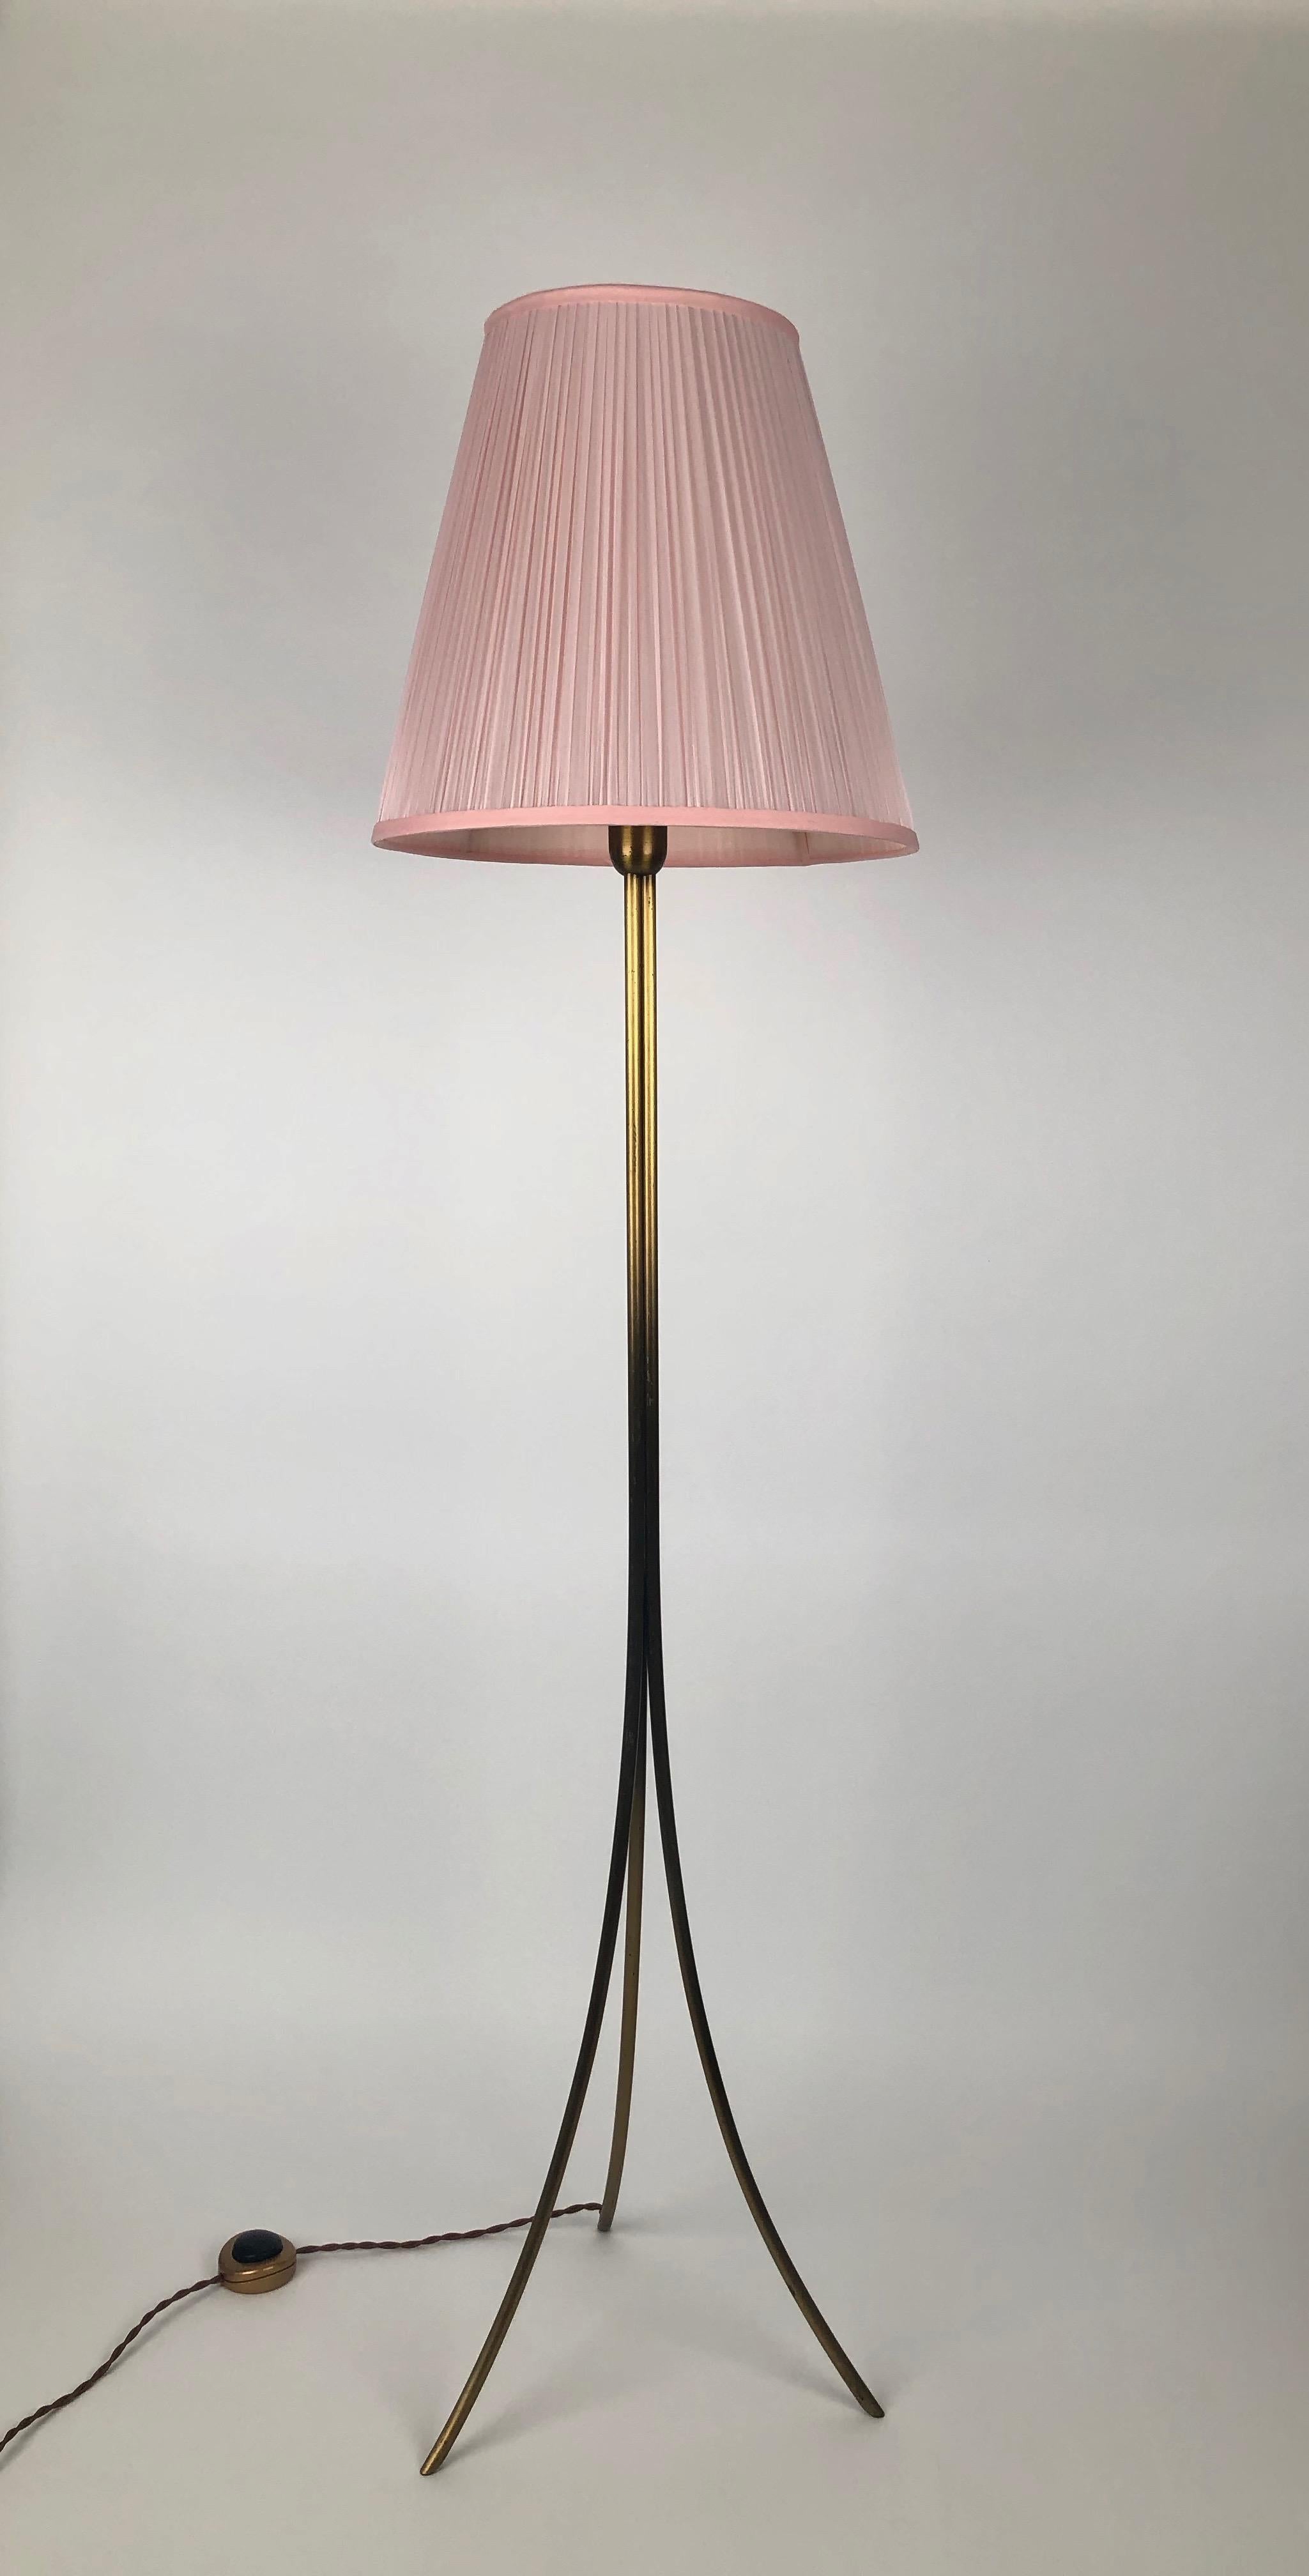 Elegante, dreibeinige Stehleuchte aus Österreich, hergestellt Mitte der 1950er Jahre. Die Metallarbeit ist makellos und hervorragend zusammengesetzt, um eine zarte Form zu schaffen. Dazu passt ein Lampenschirm aus halbtransparenter rosa Seide. Ein